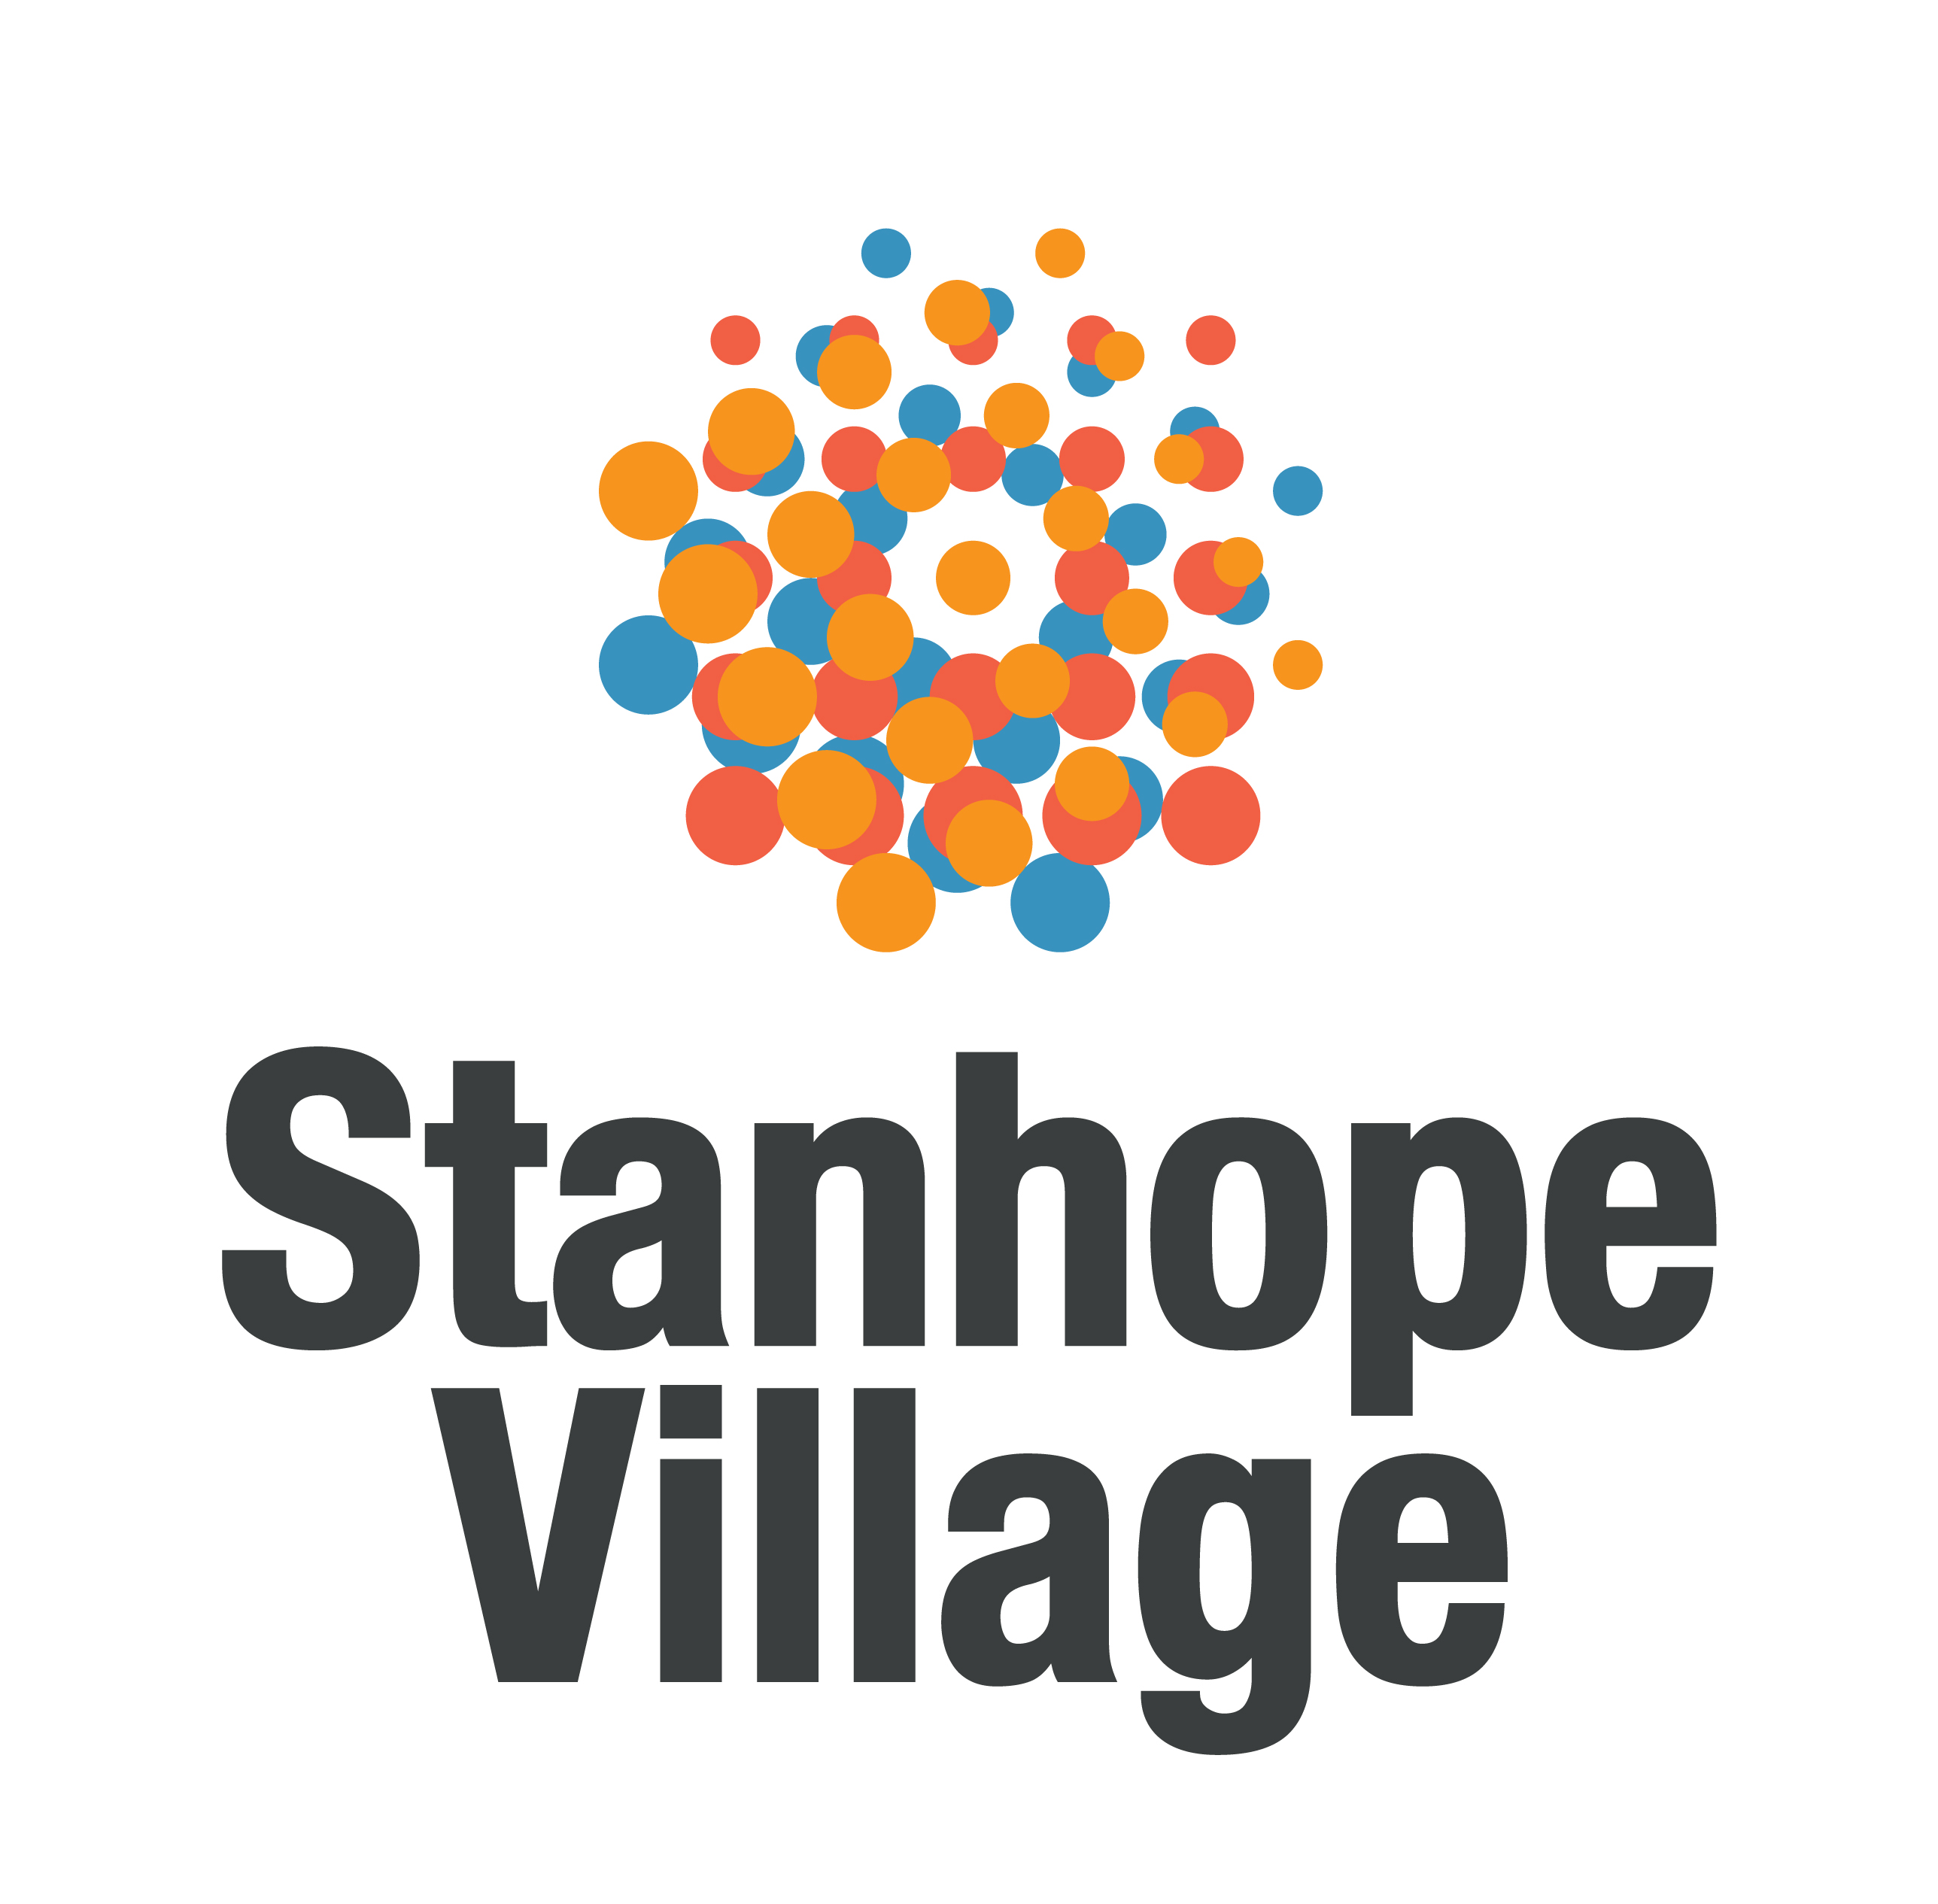 Daily Inspection Checklist - Stanhope Village